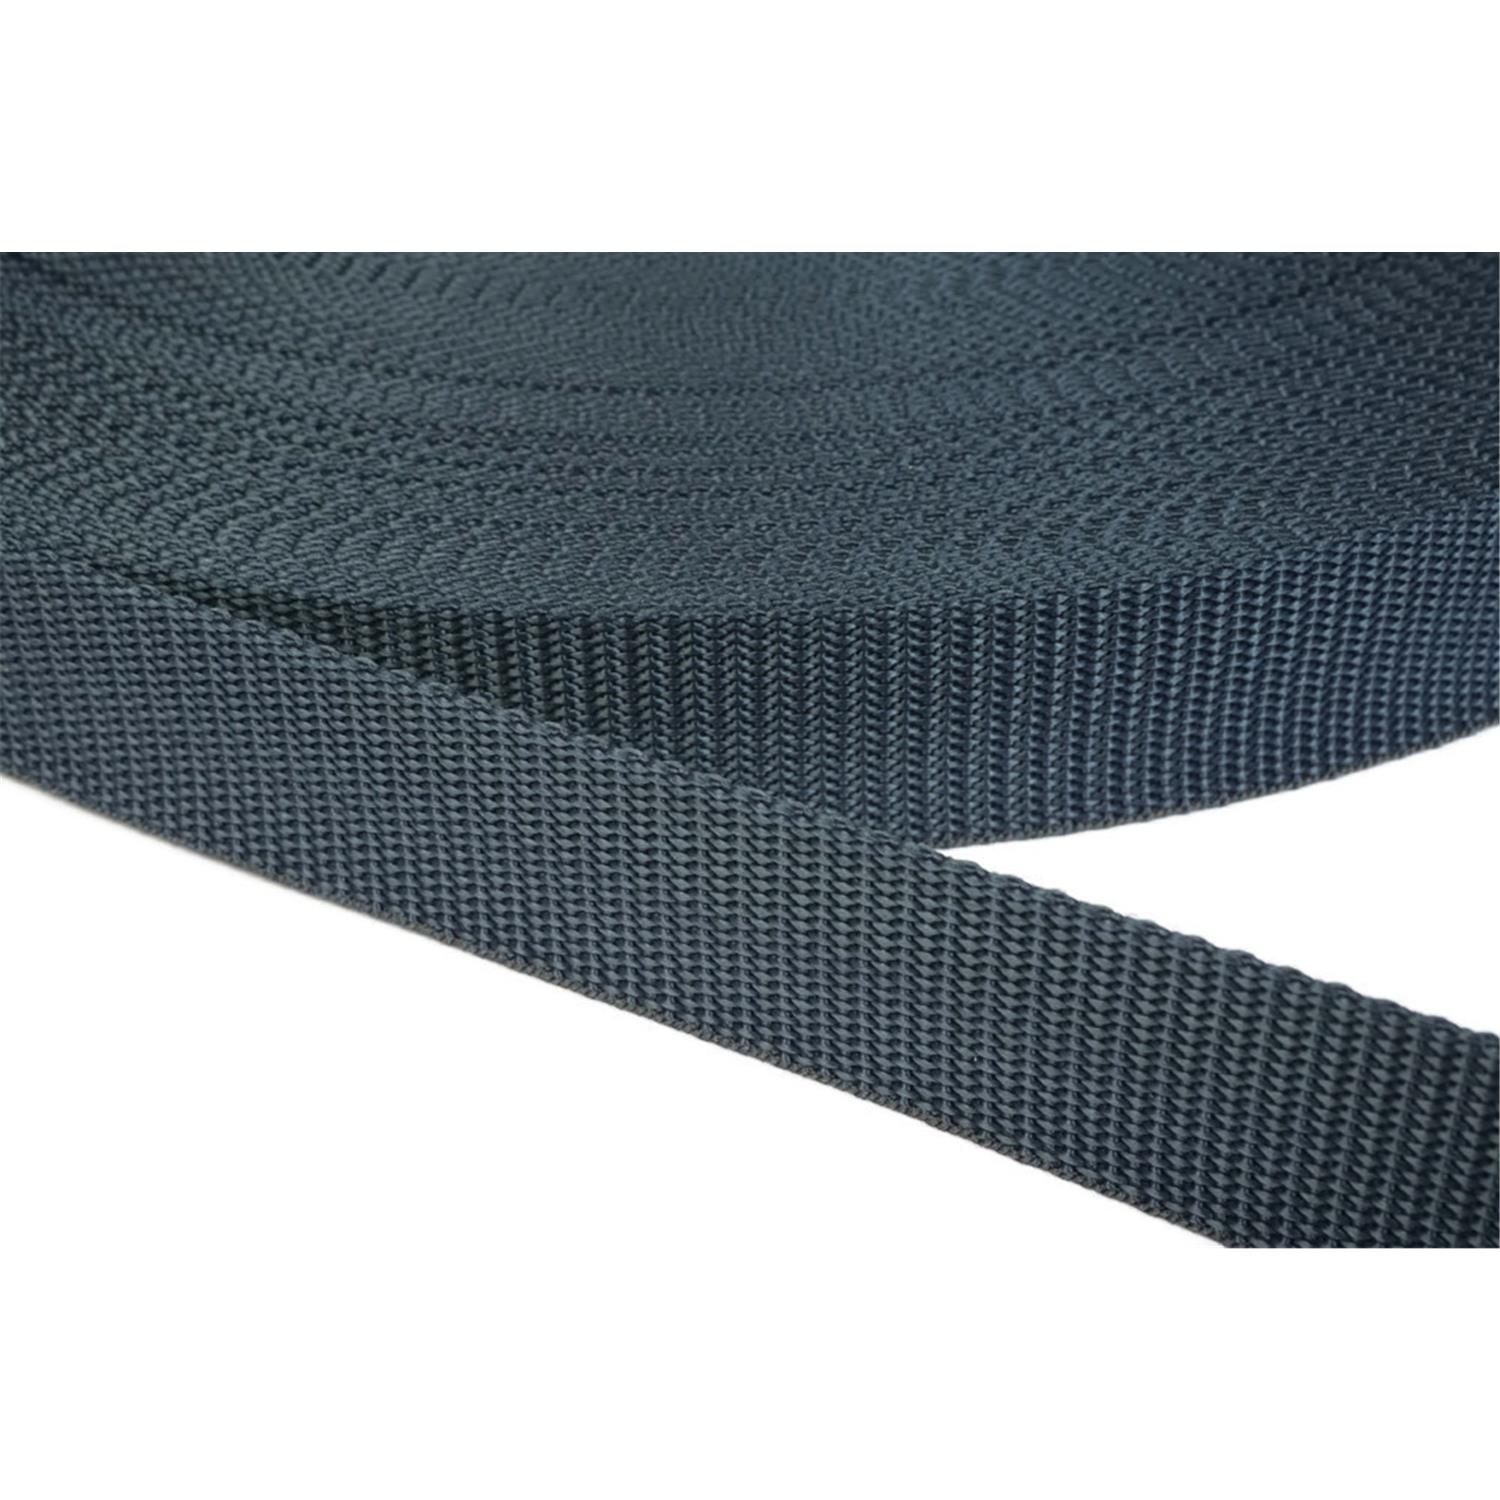 Gurtband 15mm breit aus Polypropylen in 41 Farben 40 - dunkelgrau/blau 12 Meter